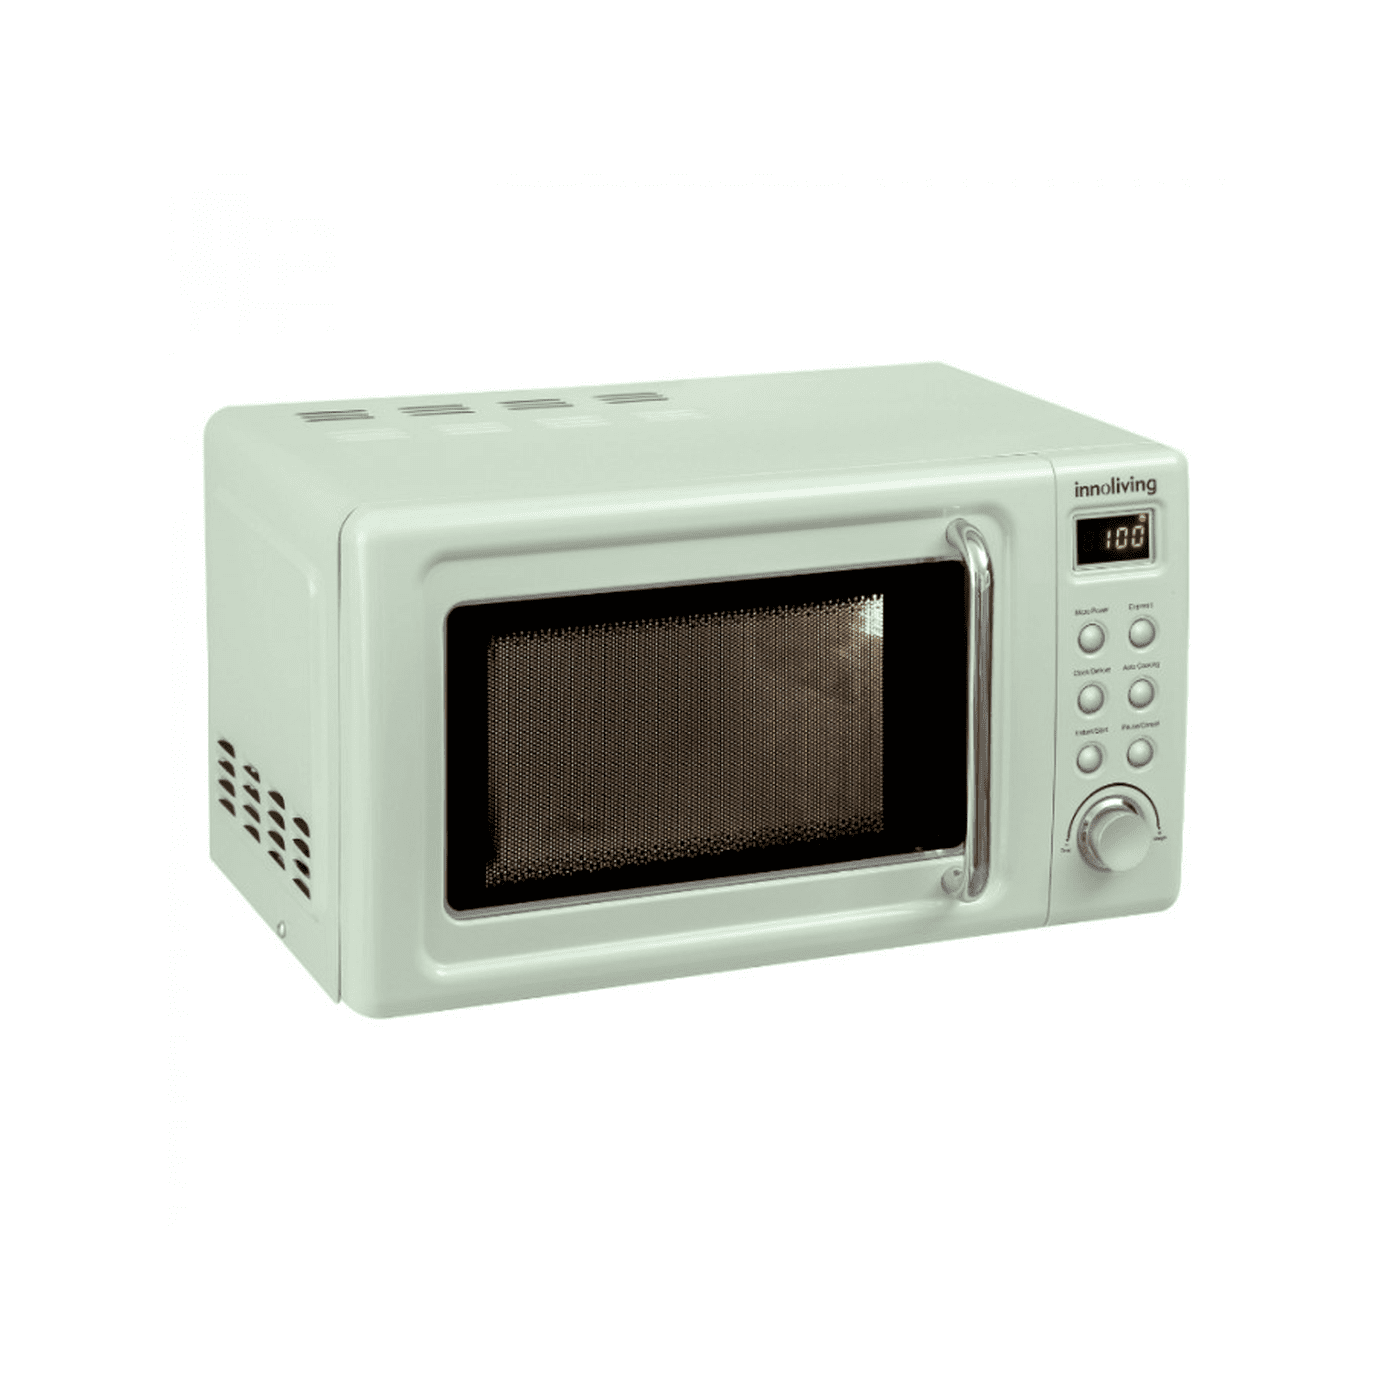 Forno microonde Vintage 20 litri funzione scongelamento e grill, Innoliving INN-861